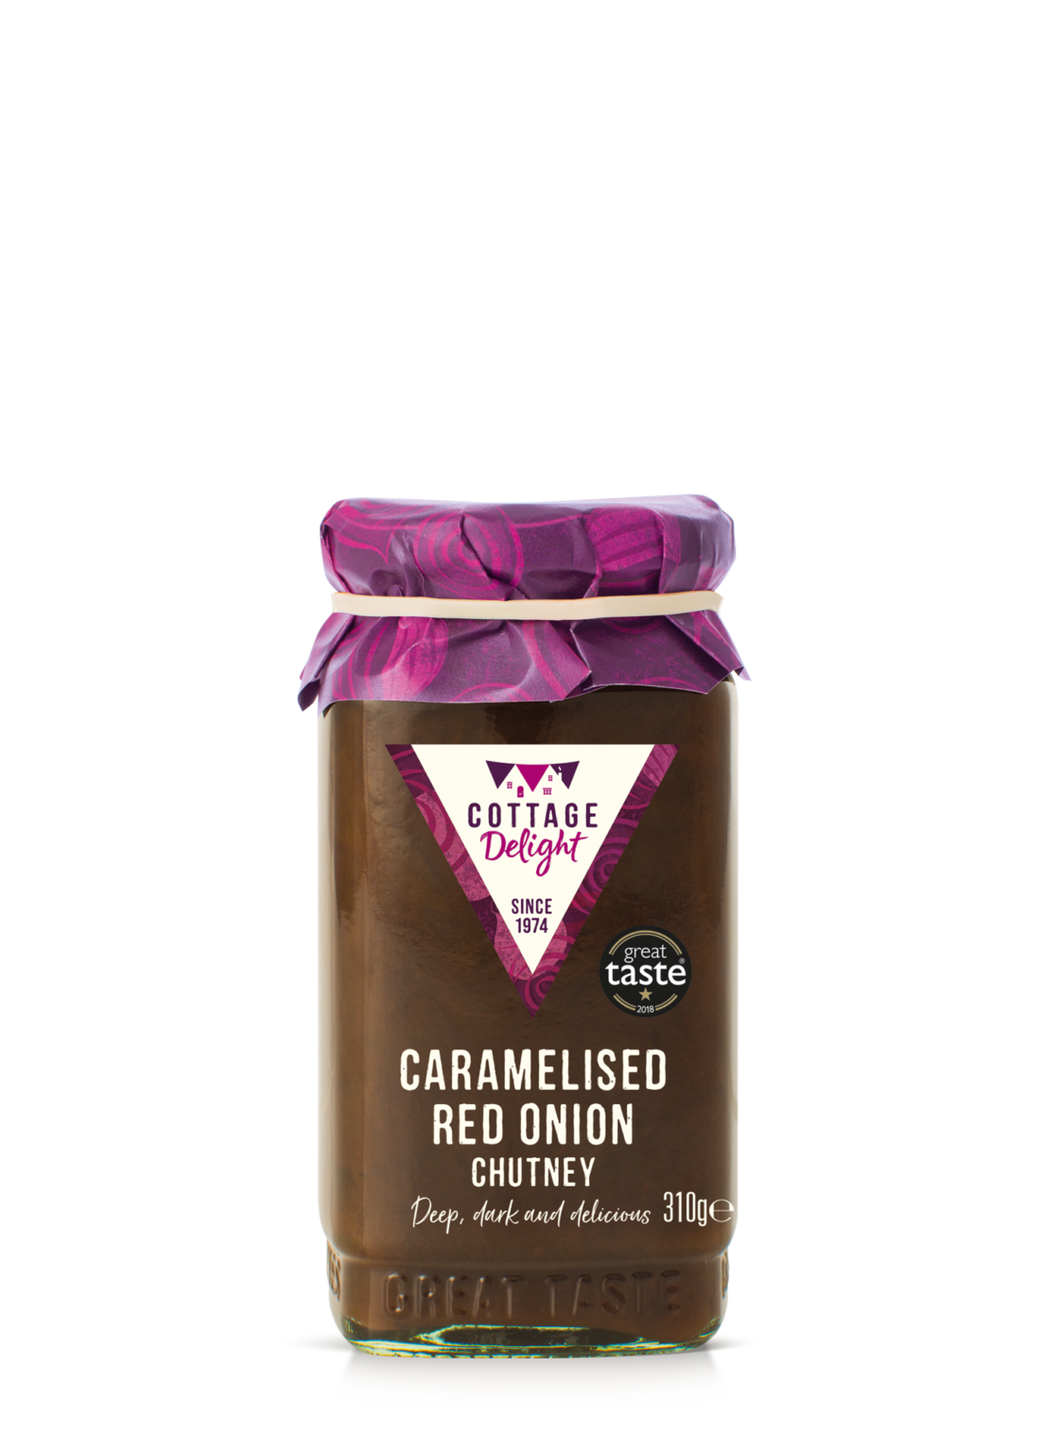 Caramelised red onion chutney